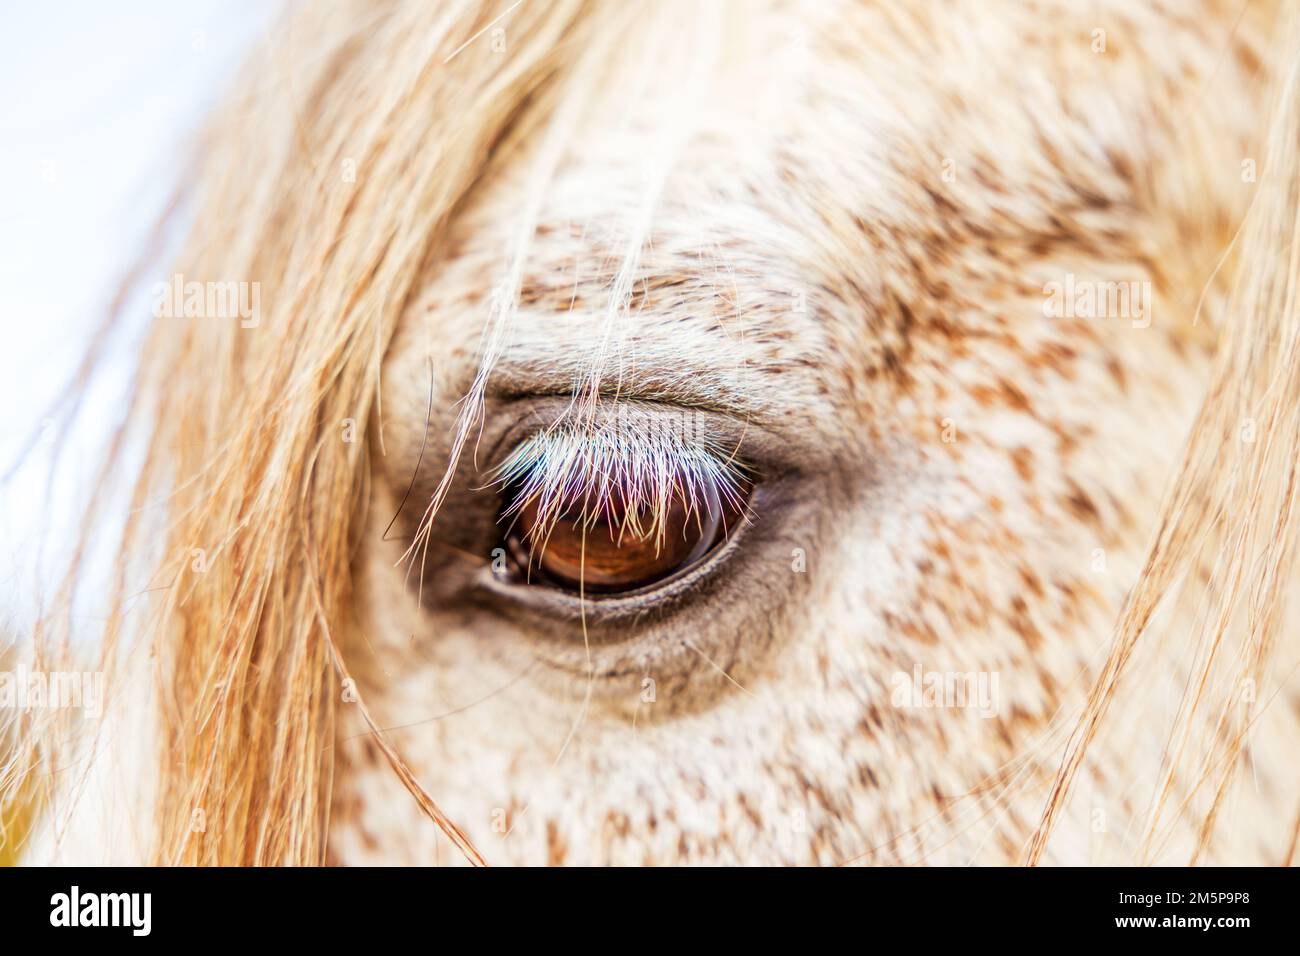 White Lusitano mare, eye details close up, horses eyes and mane. Stock Photo